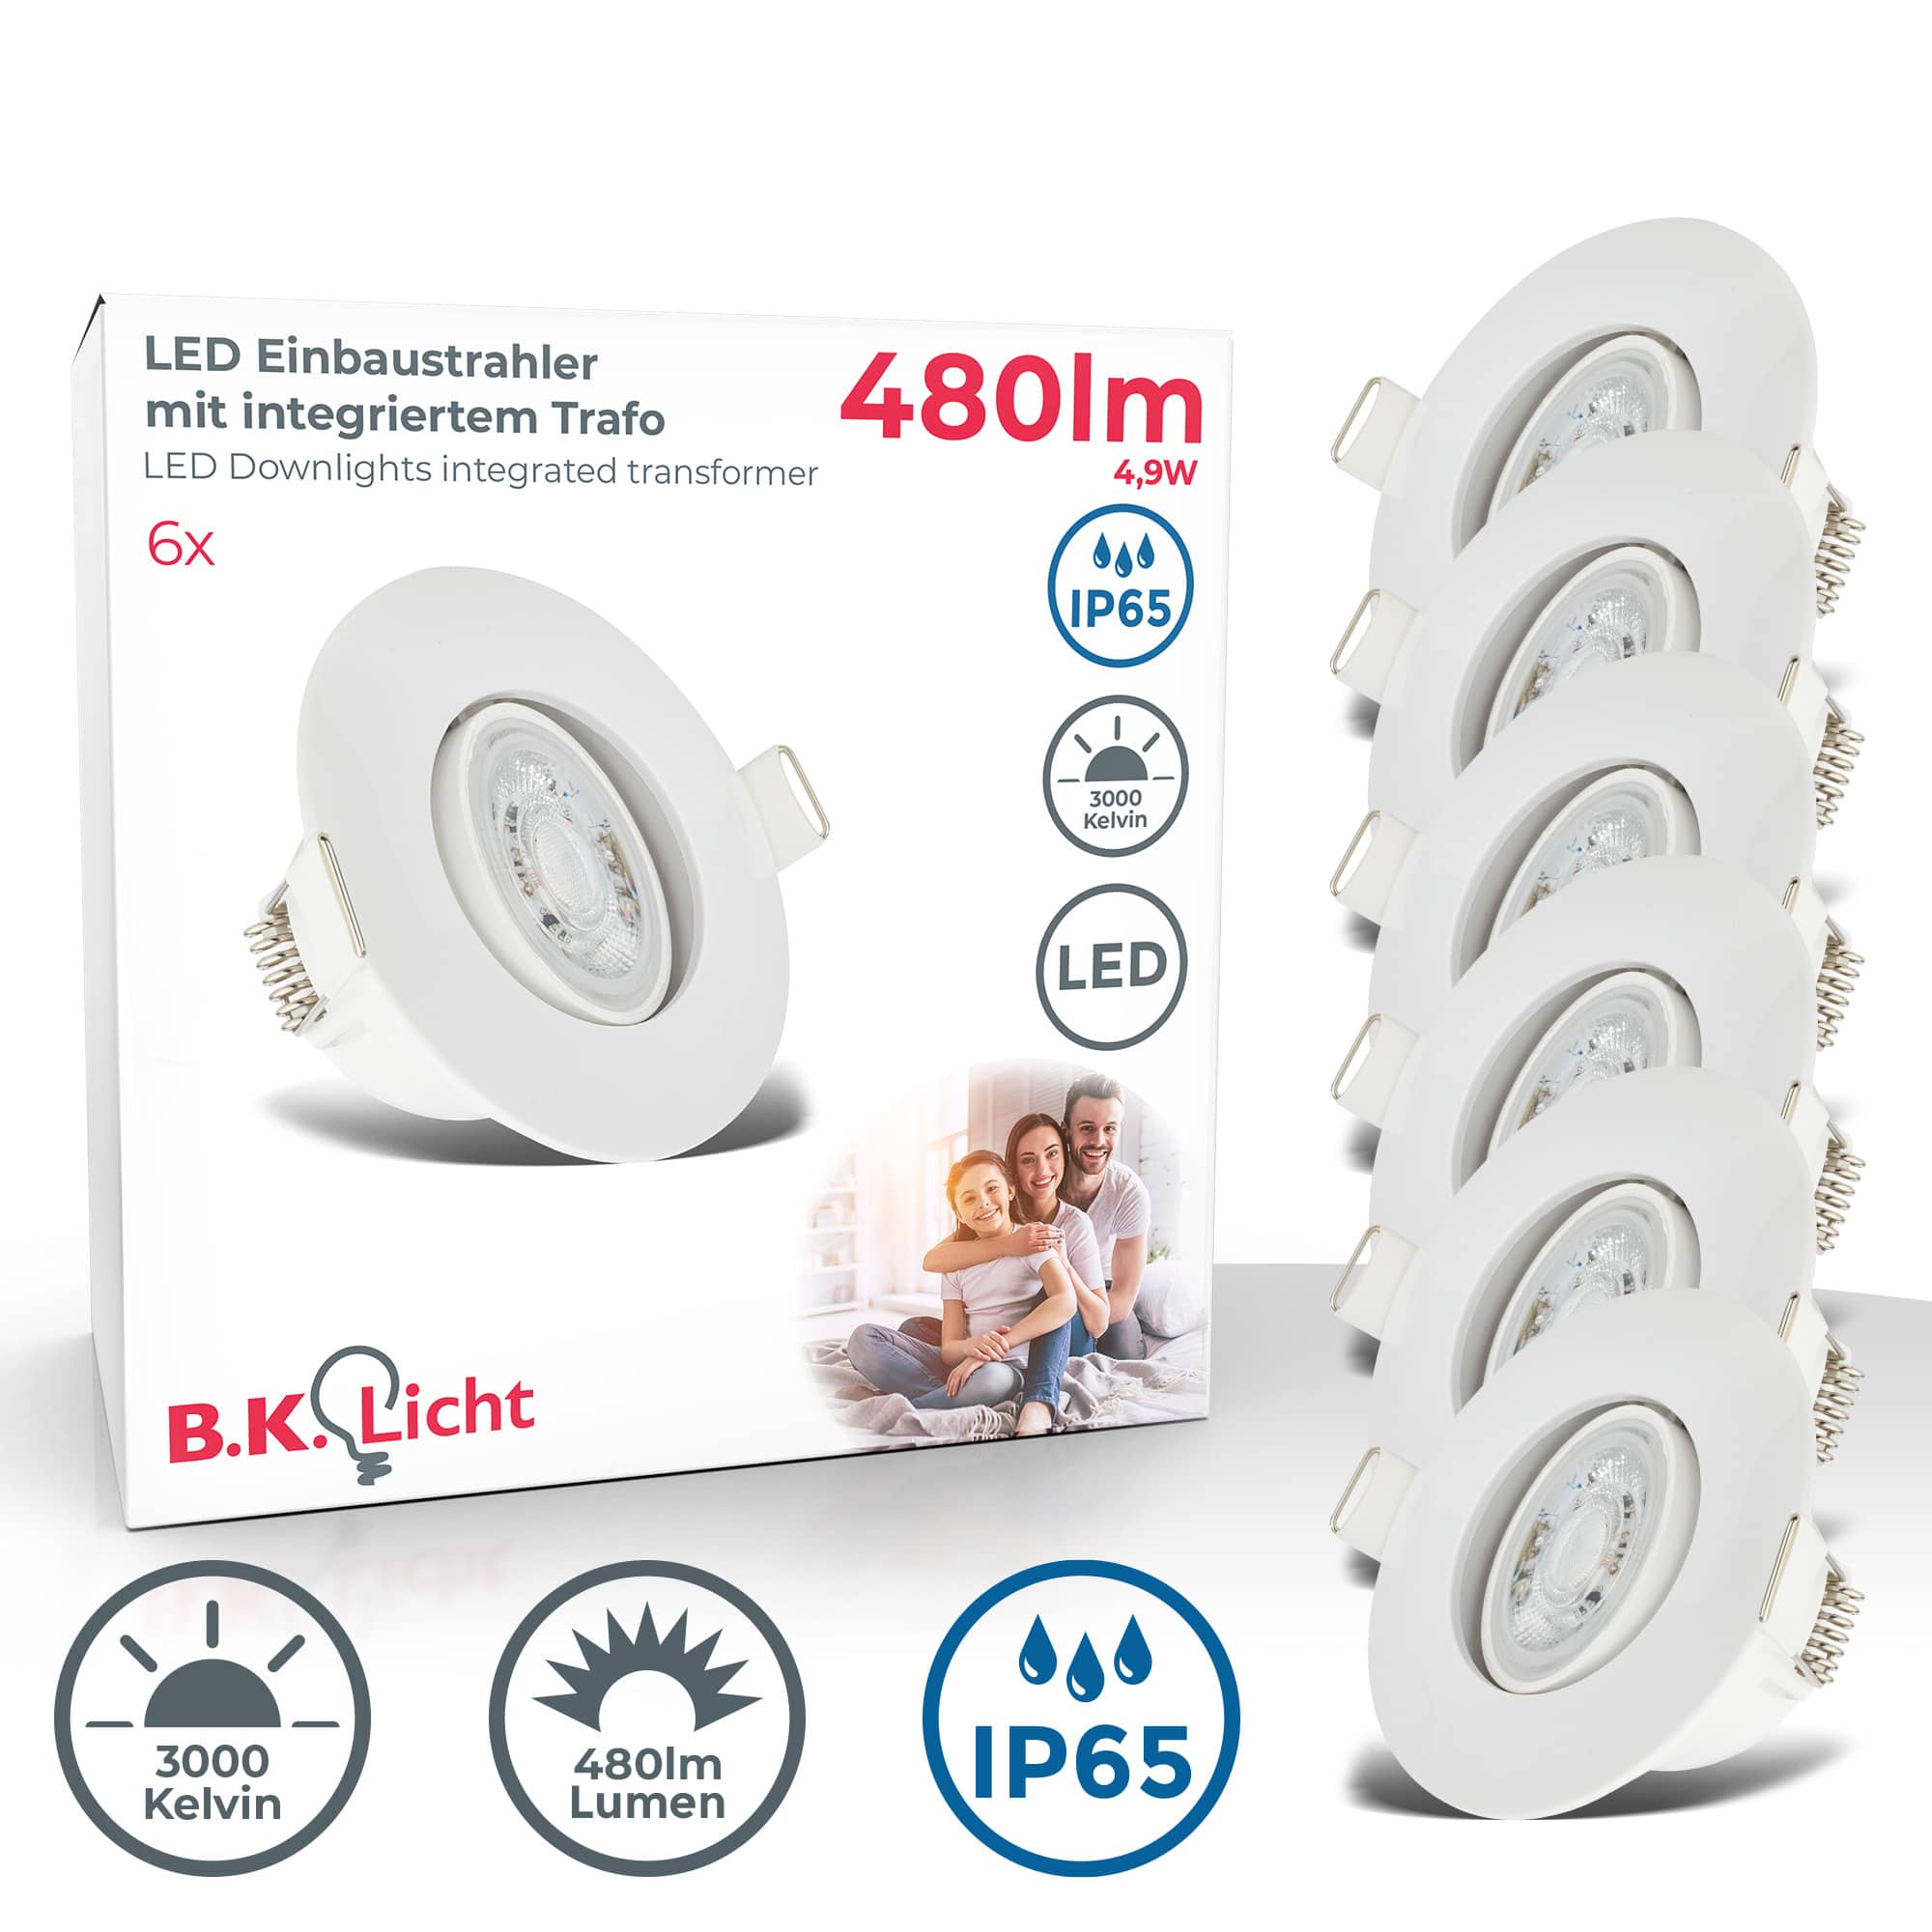 LED Bad Einbaustrahler IP65 schwenkbar - 6er SET - Einbauleuchten 230V Ø90mm wasserfest Badezimmer 5W 480lm warmweiße Lichtfarbe | weiß - 1